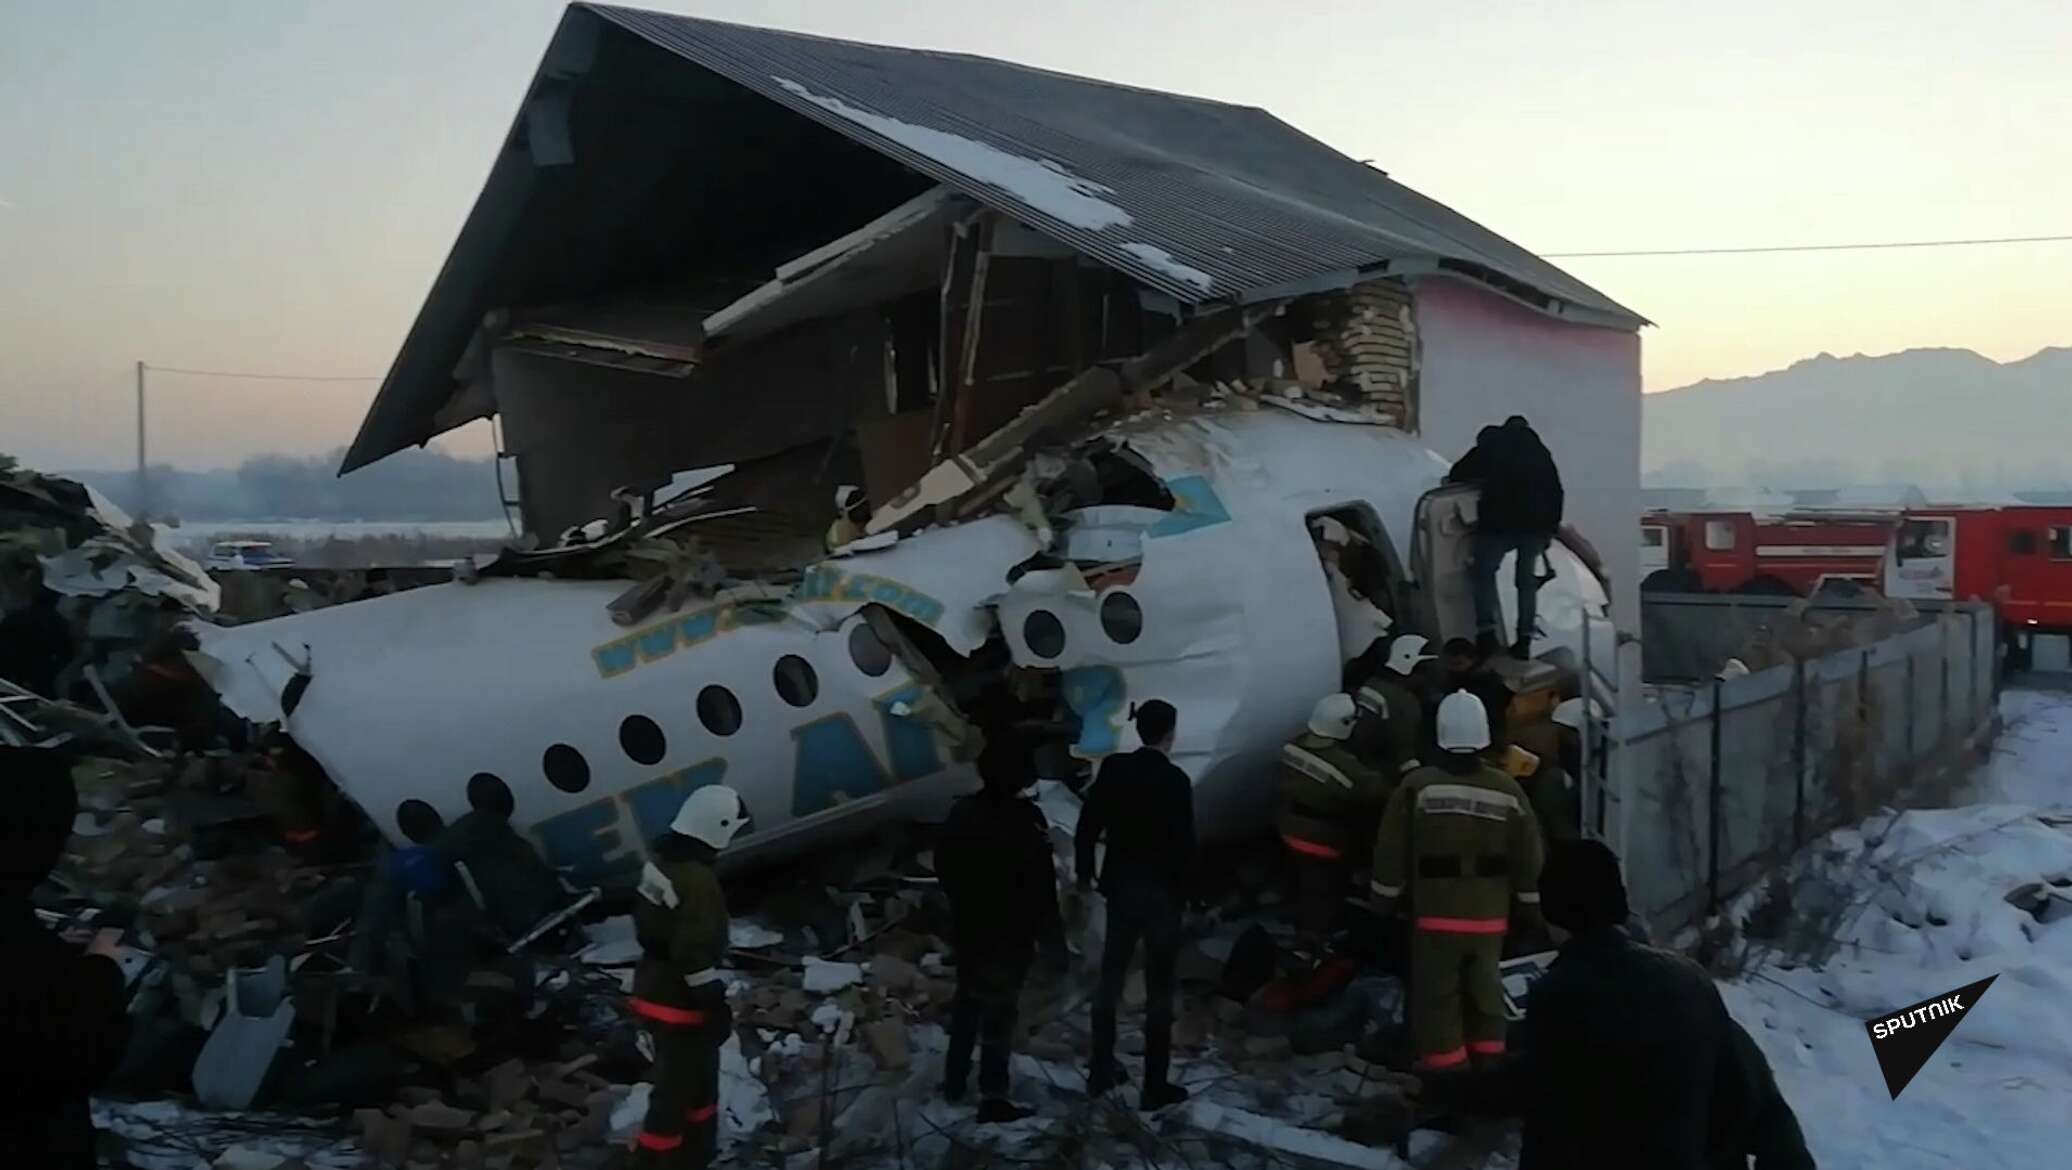 Авиакатастрофа 27. Авиакатастрофа в Алма Ате 2019. Fokker 100 Алматы катастрофа. Катастрофа ту-154 в Алма-Ате. Авиакатастрофа БЕКЭЙР В Алма-Ате 27 декабря 2019 года.